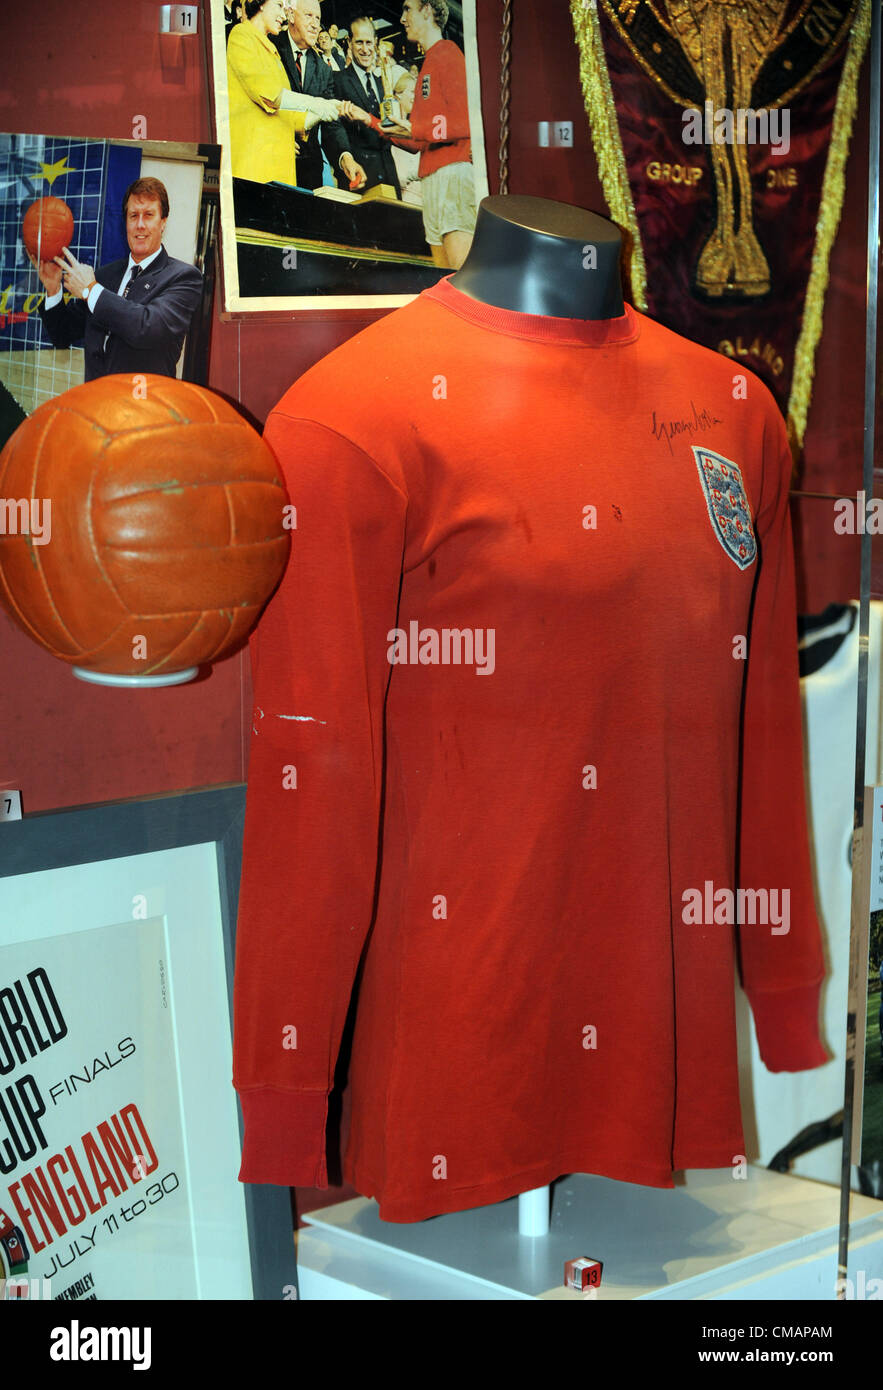 Musée national du football de Manchester, Angleterre, RU, 1966 Coupe du Monde Angleterre jersey et la balle. Banque D'Images